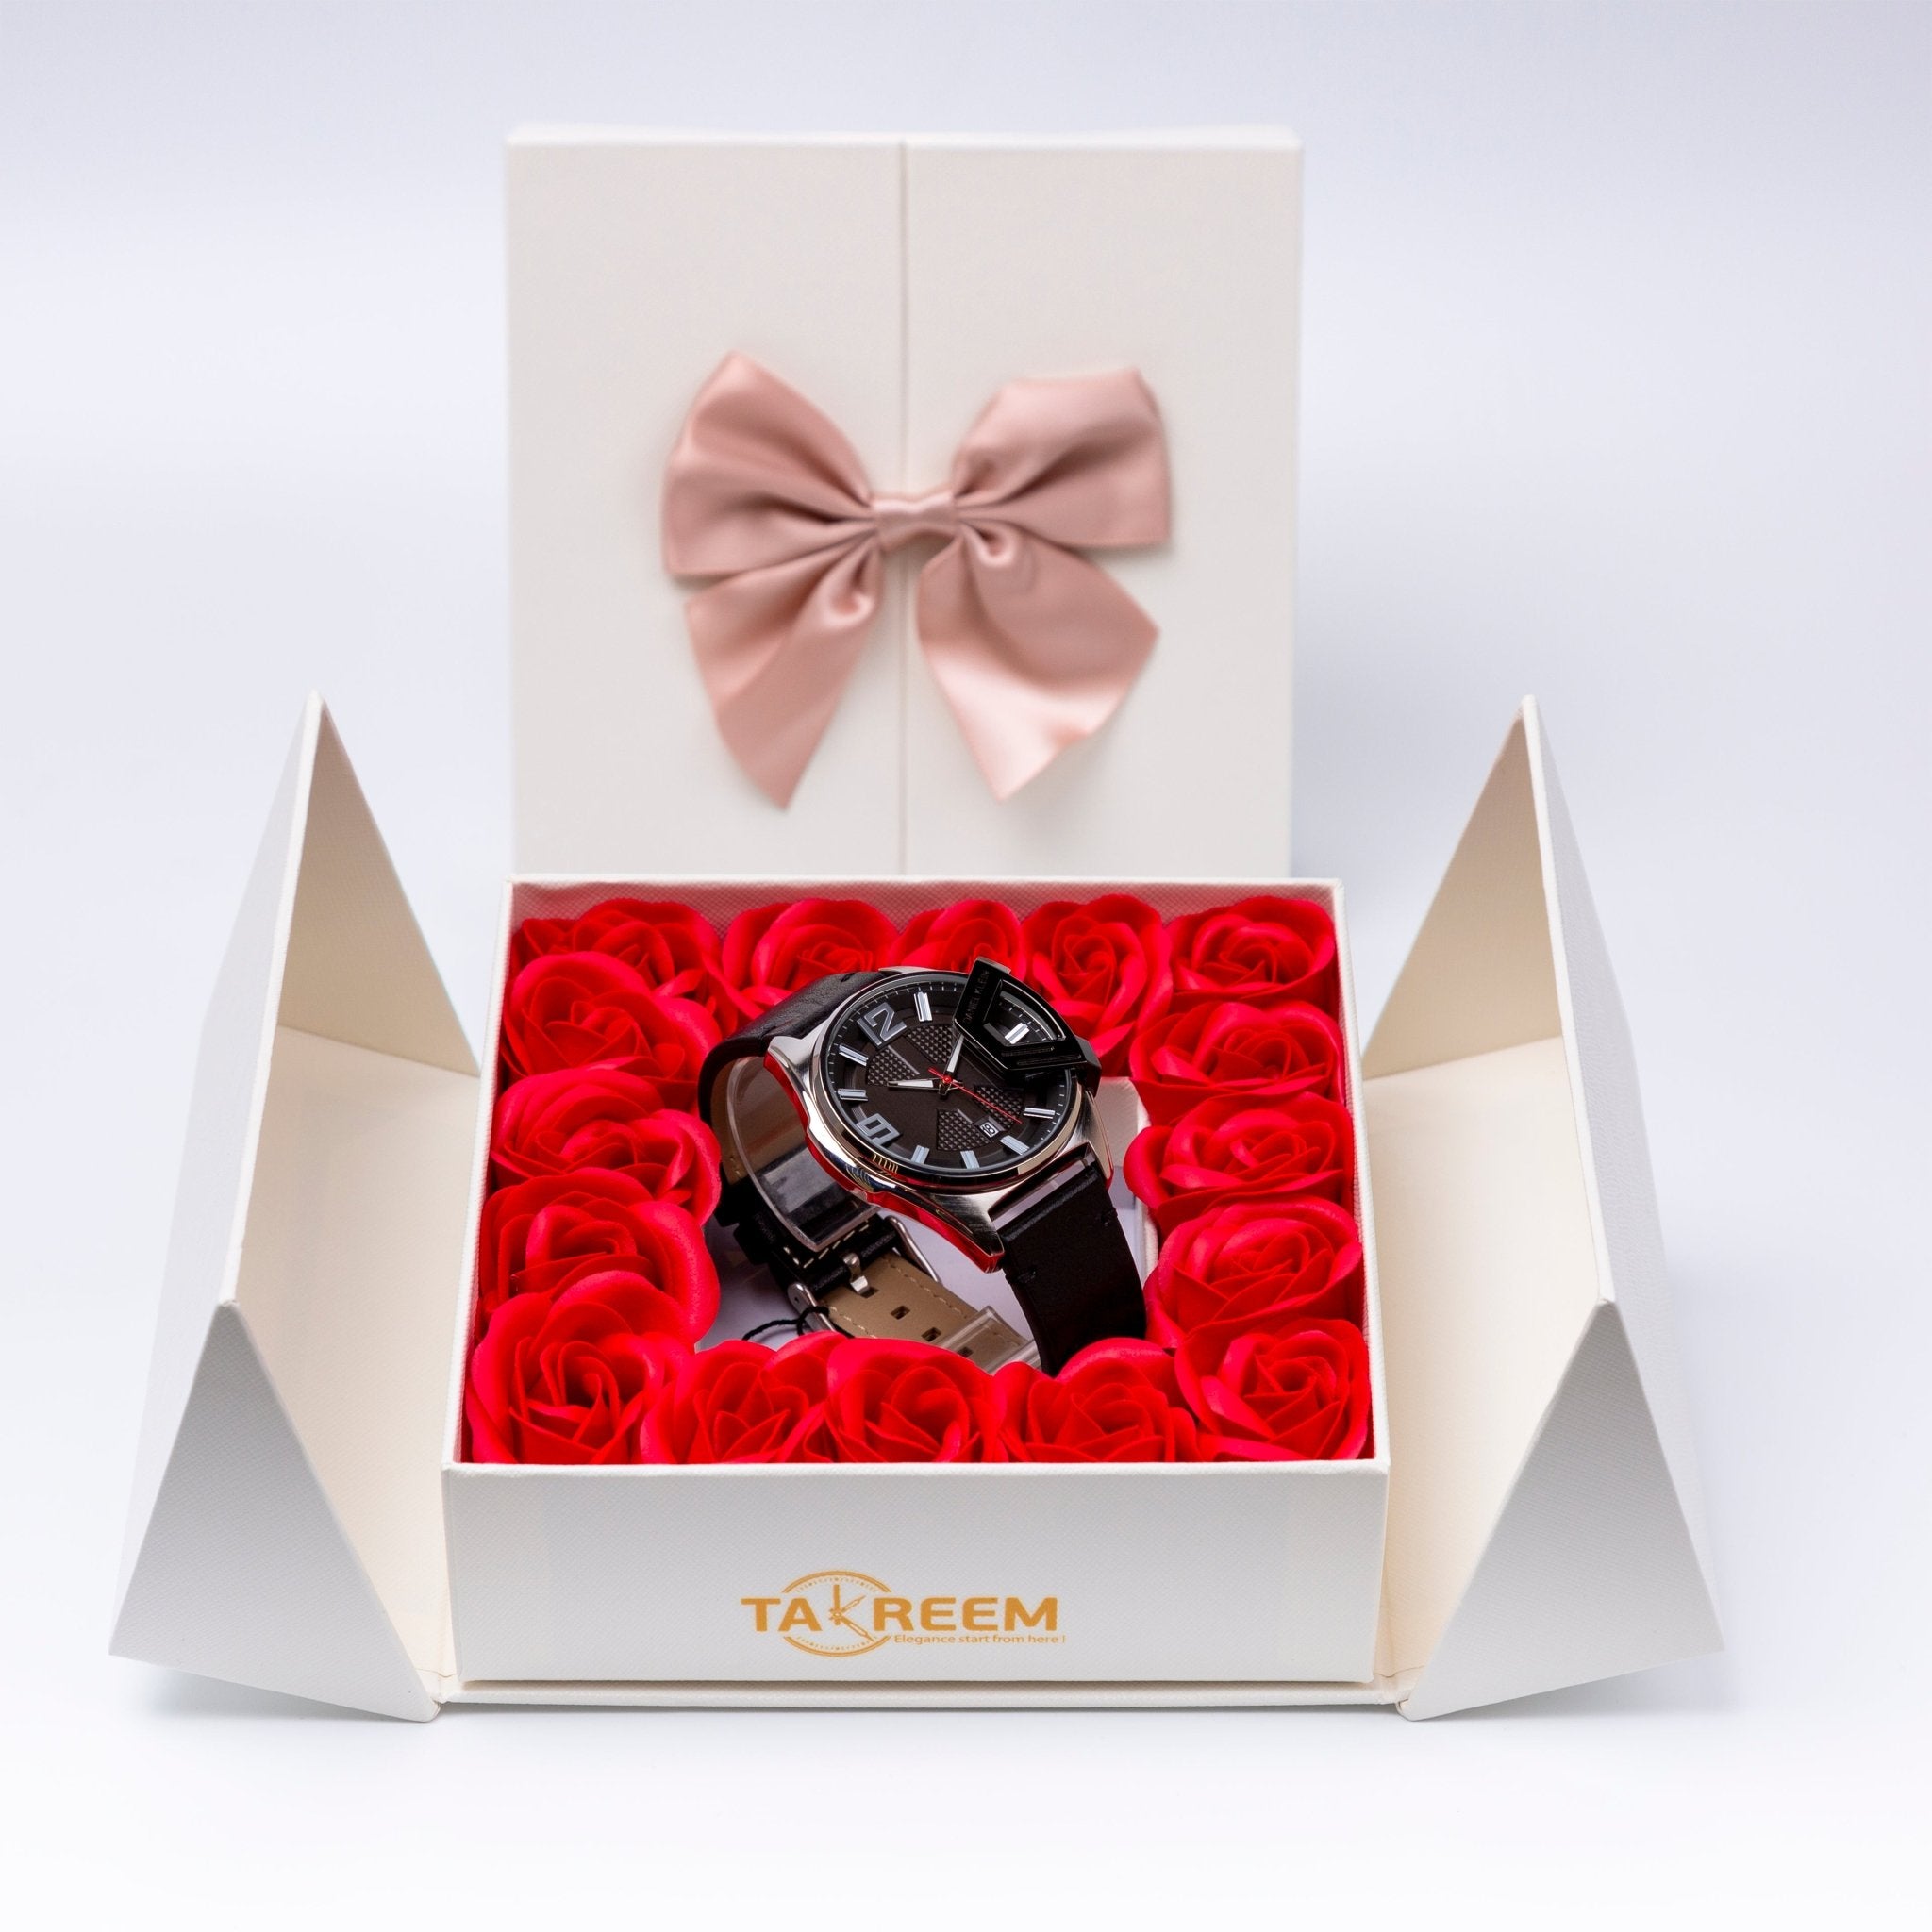 Flower Box - Gift For Men 13 - #shoFlower Box - Gift For Men 13p_name#Flower Box - Gift For Men 13Gift Boxes & TinsTakreemTakreem.joMenWatchFlower Box - Gift For Men 13 - Takreem.jo